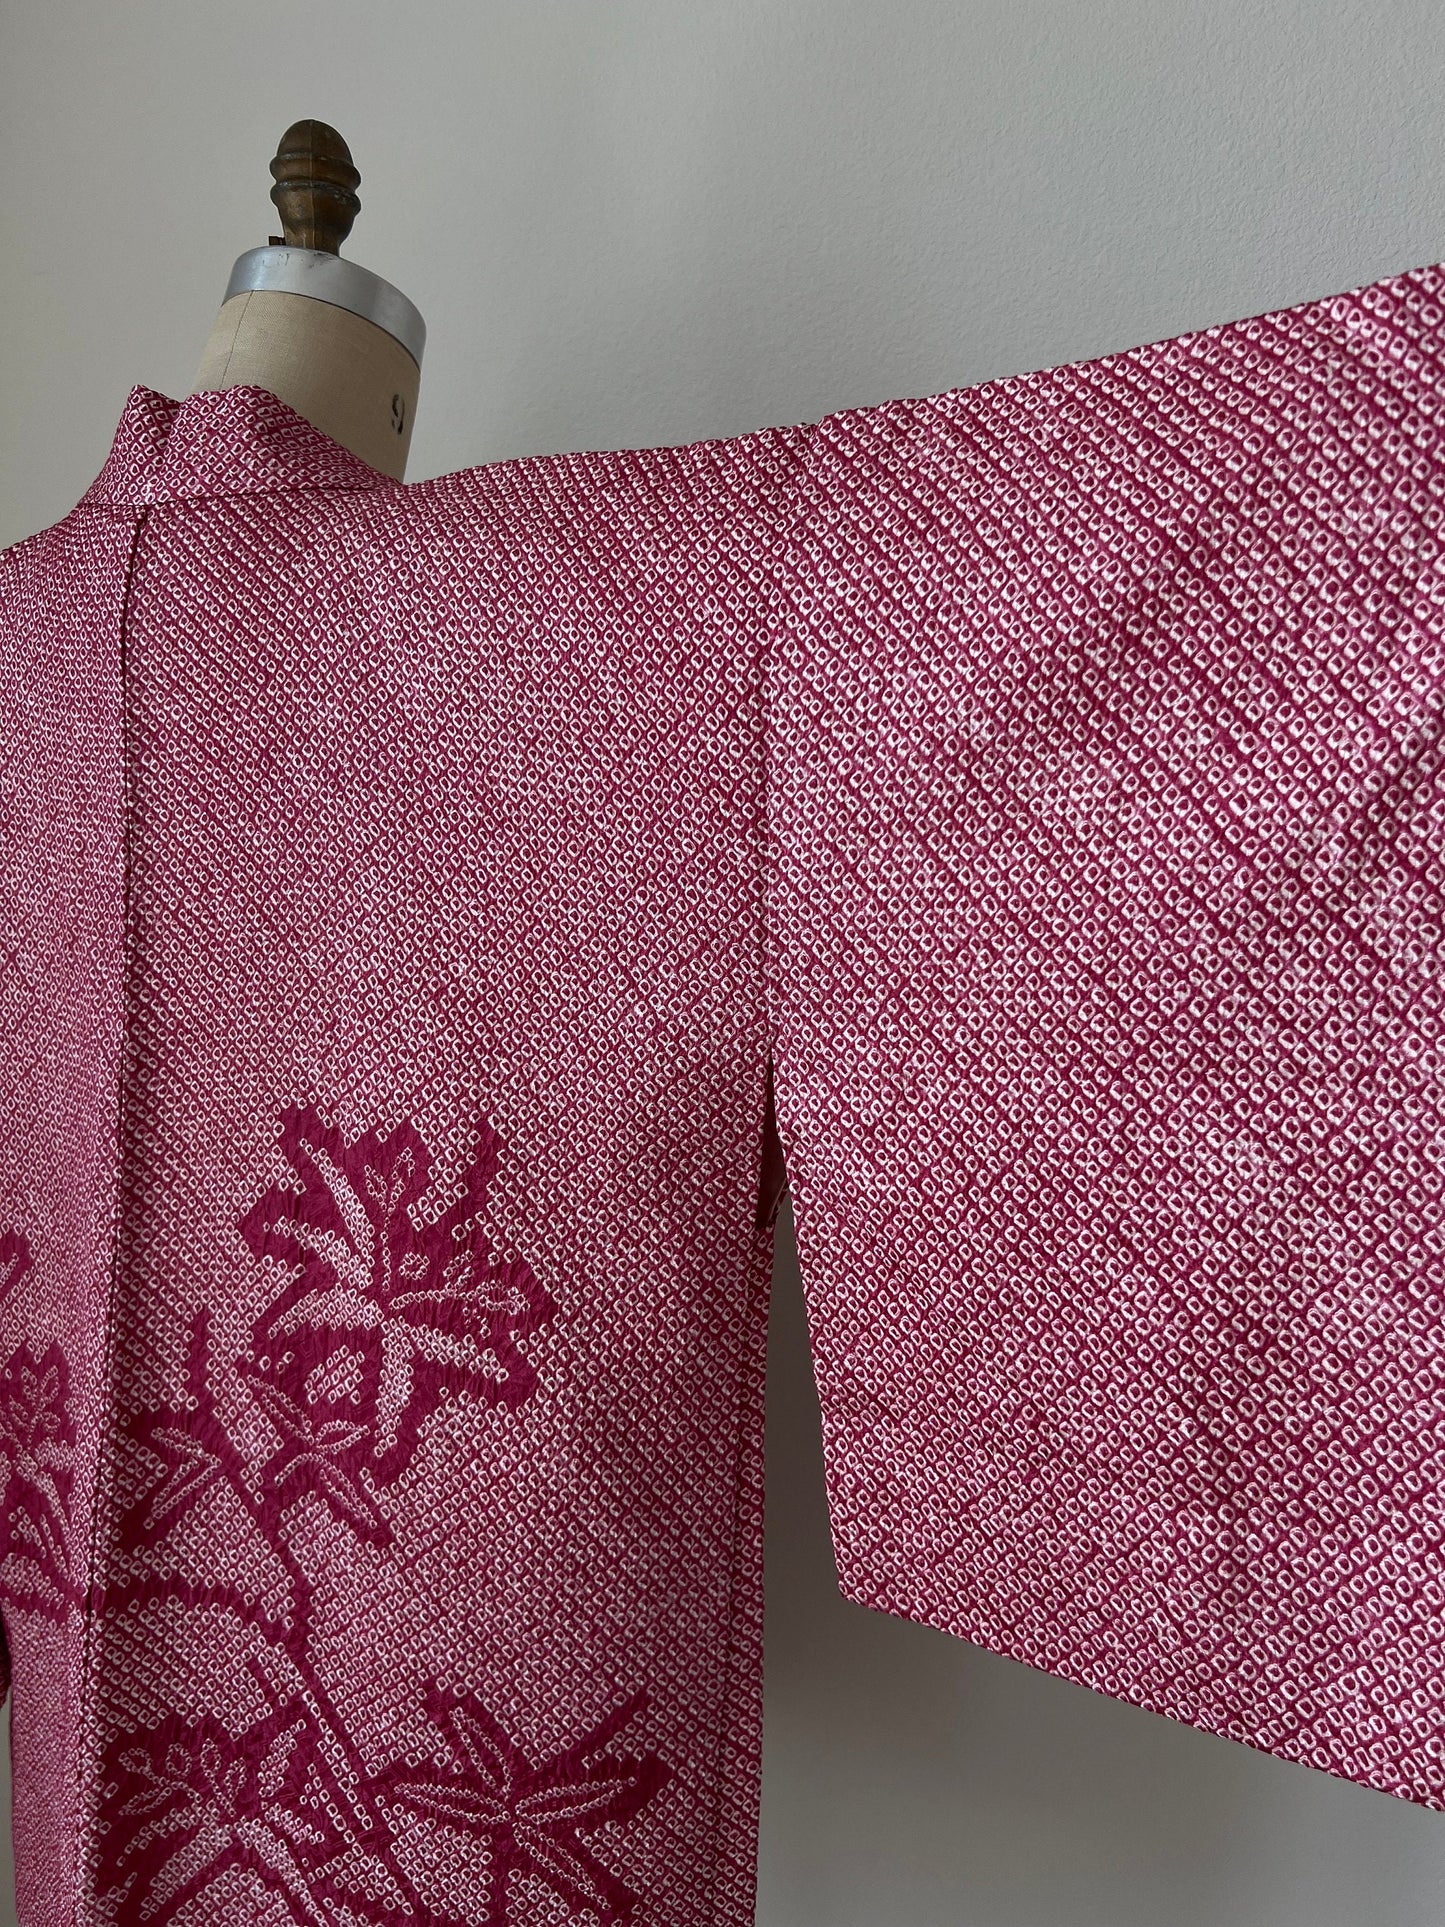 Vintage Haori Jacket Purple Silk Kimono Japanese Jacket Shibori Vintage kimono Purple Tie Dyed Jacket